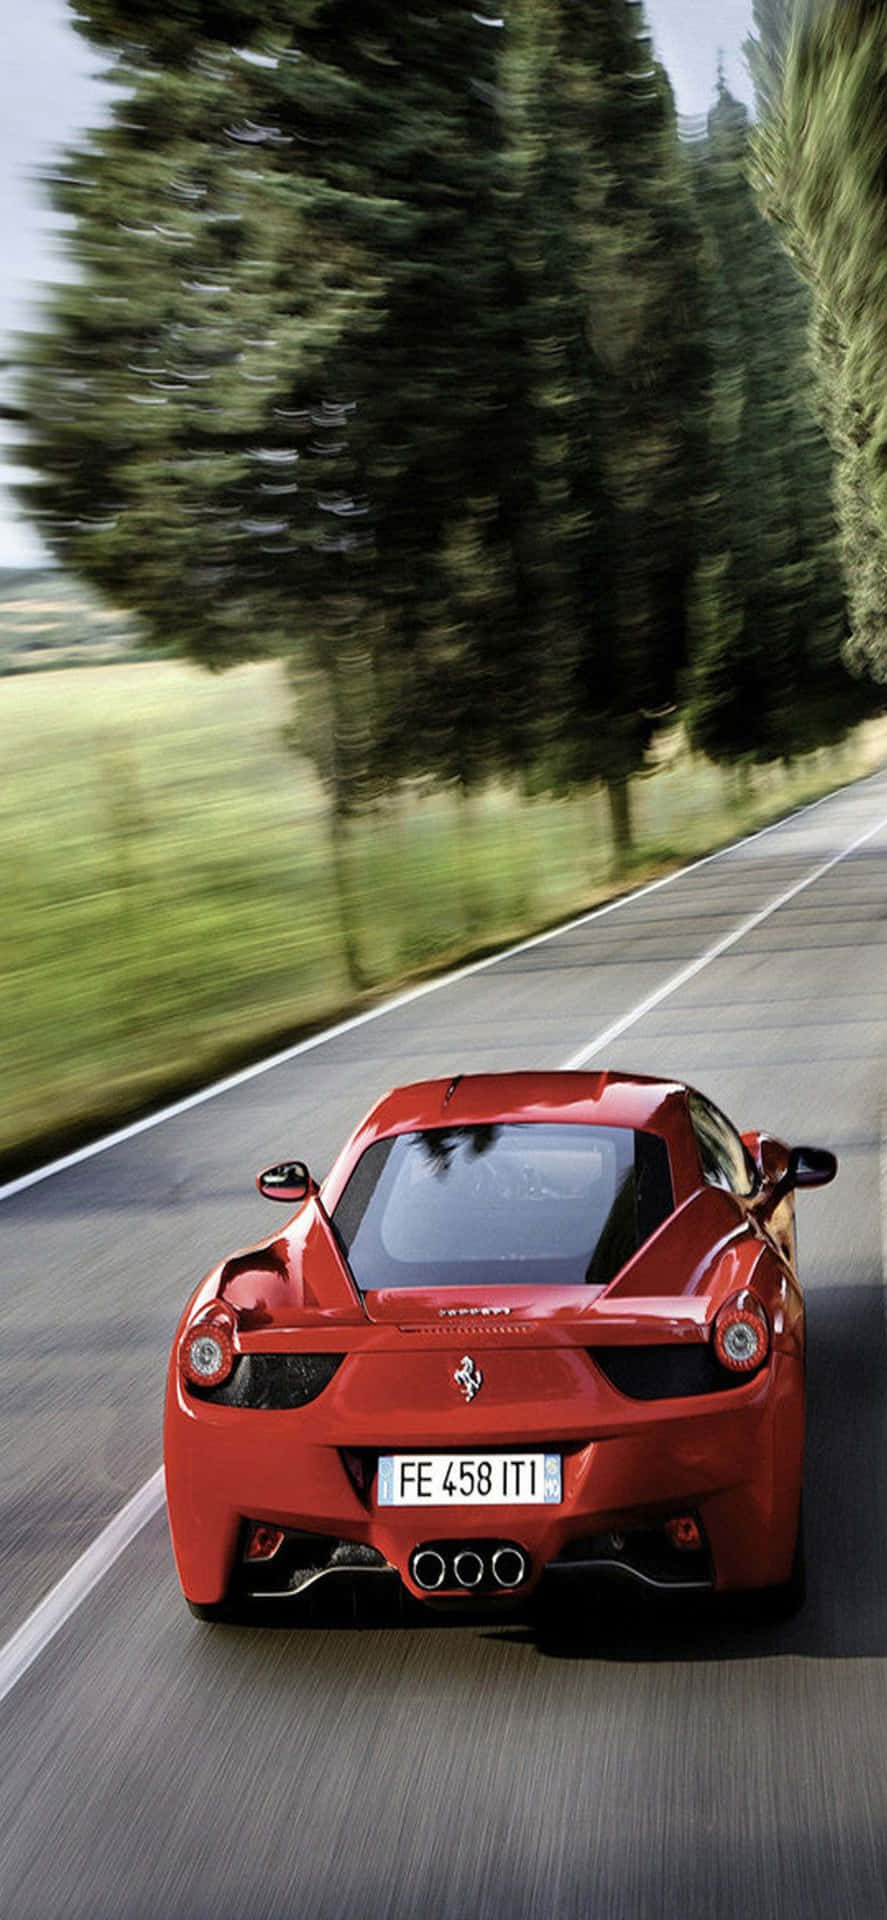 Fondode Pantalla Para Iphone Xs Max Con Un Ferrari Rojo, Modelo 2015 Ferrari 458 Spider En La Carretera.